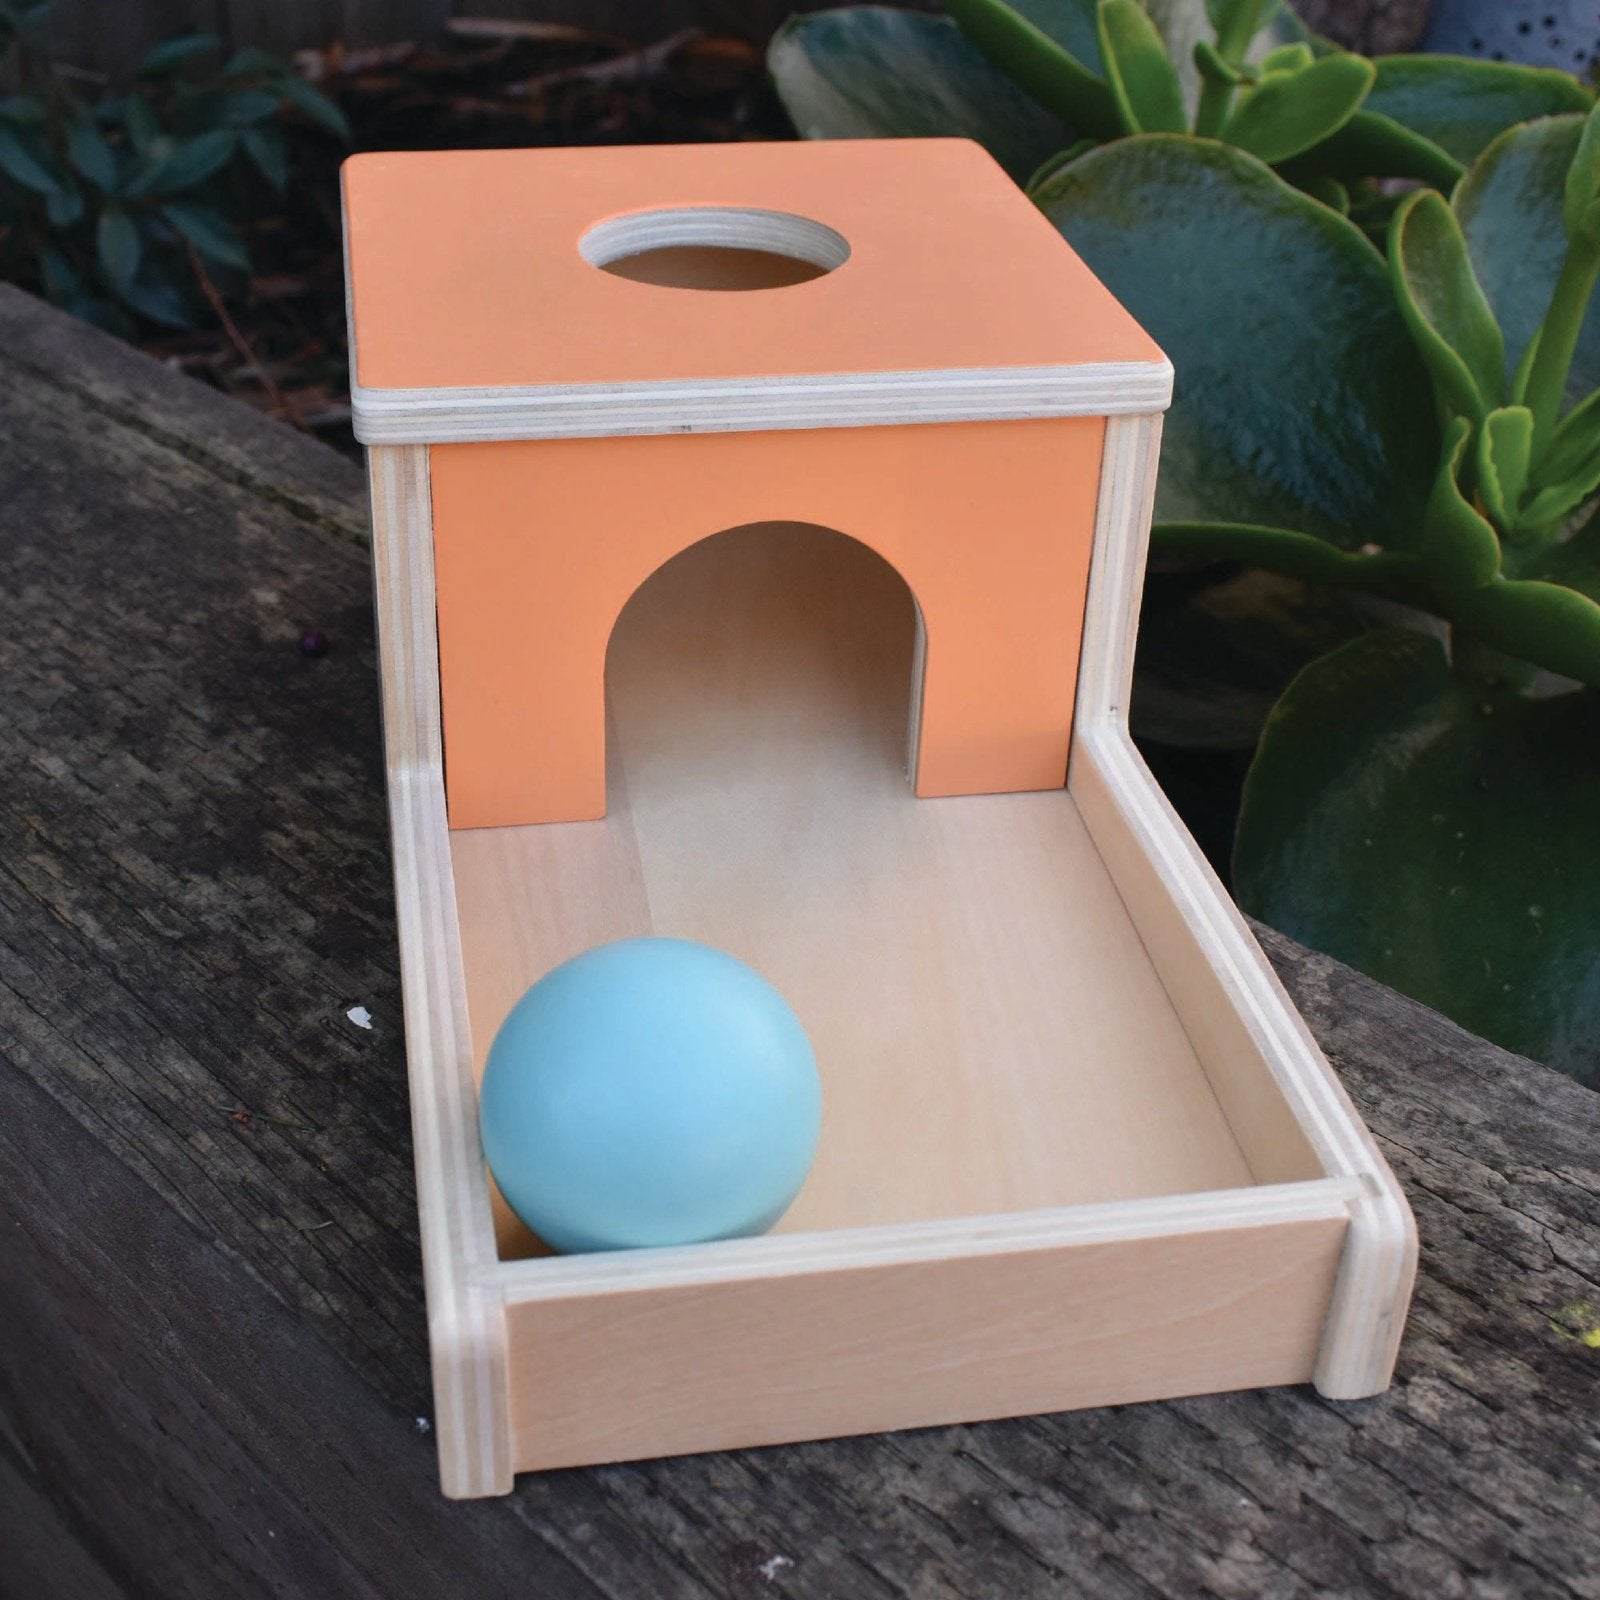 Montessori Object Permanence Ball Drop Box in Peach